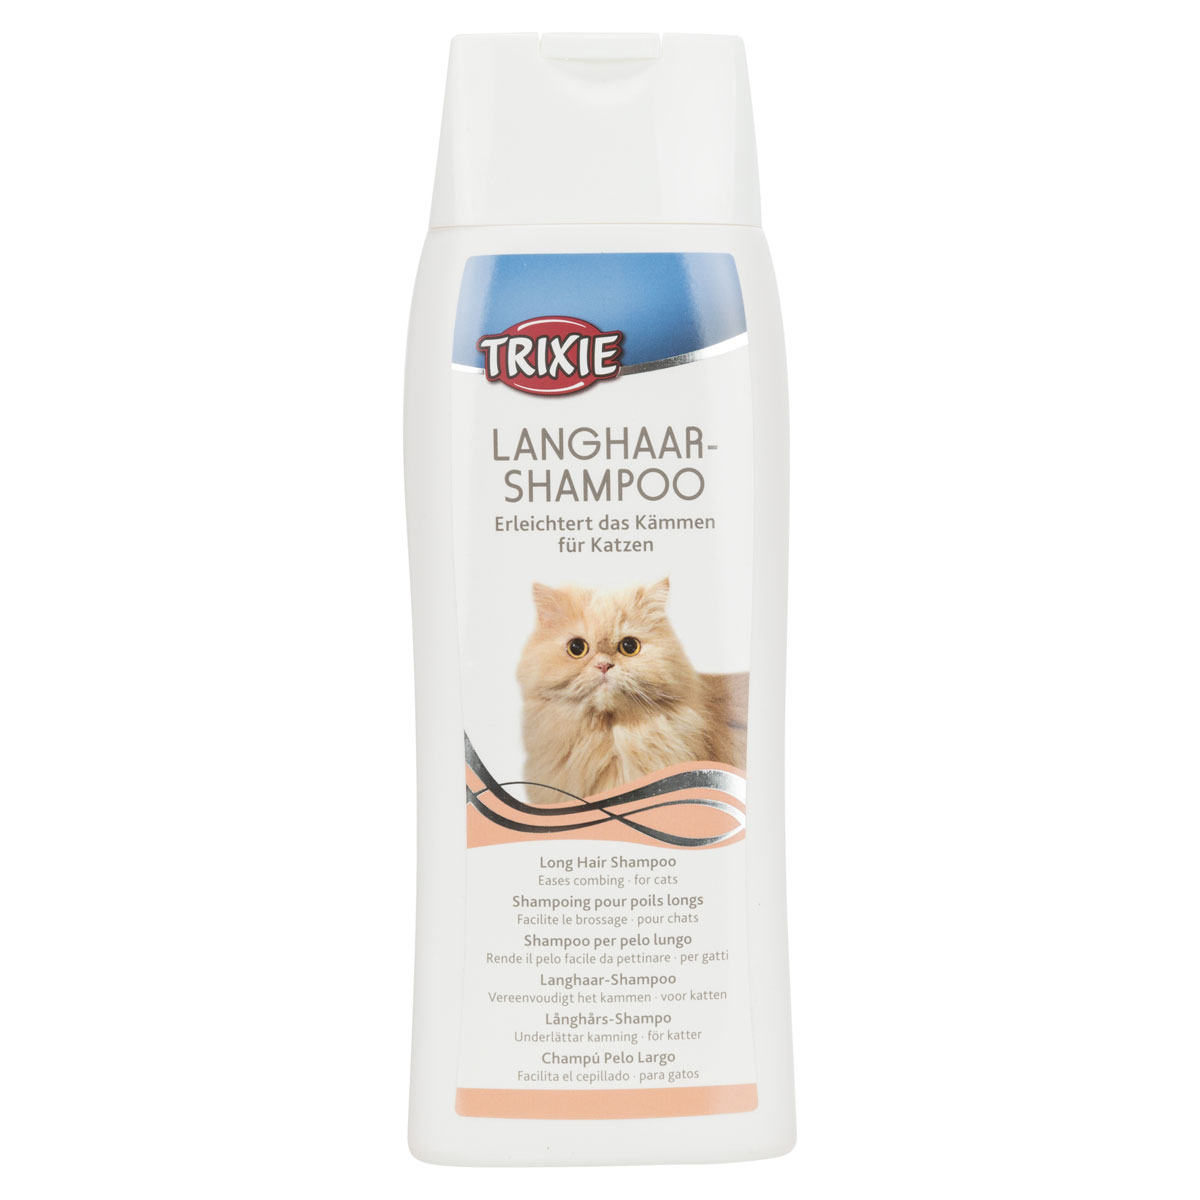 Langhaar-Shampoo Katze, 250 ml